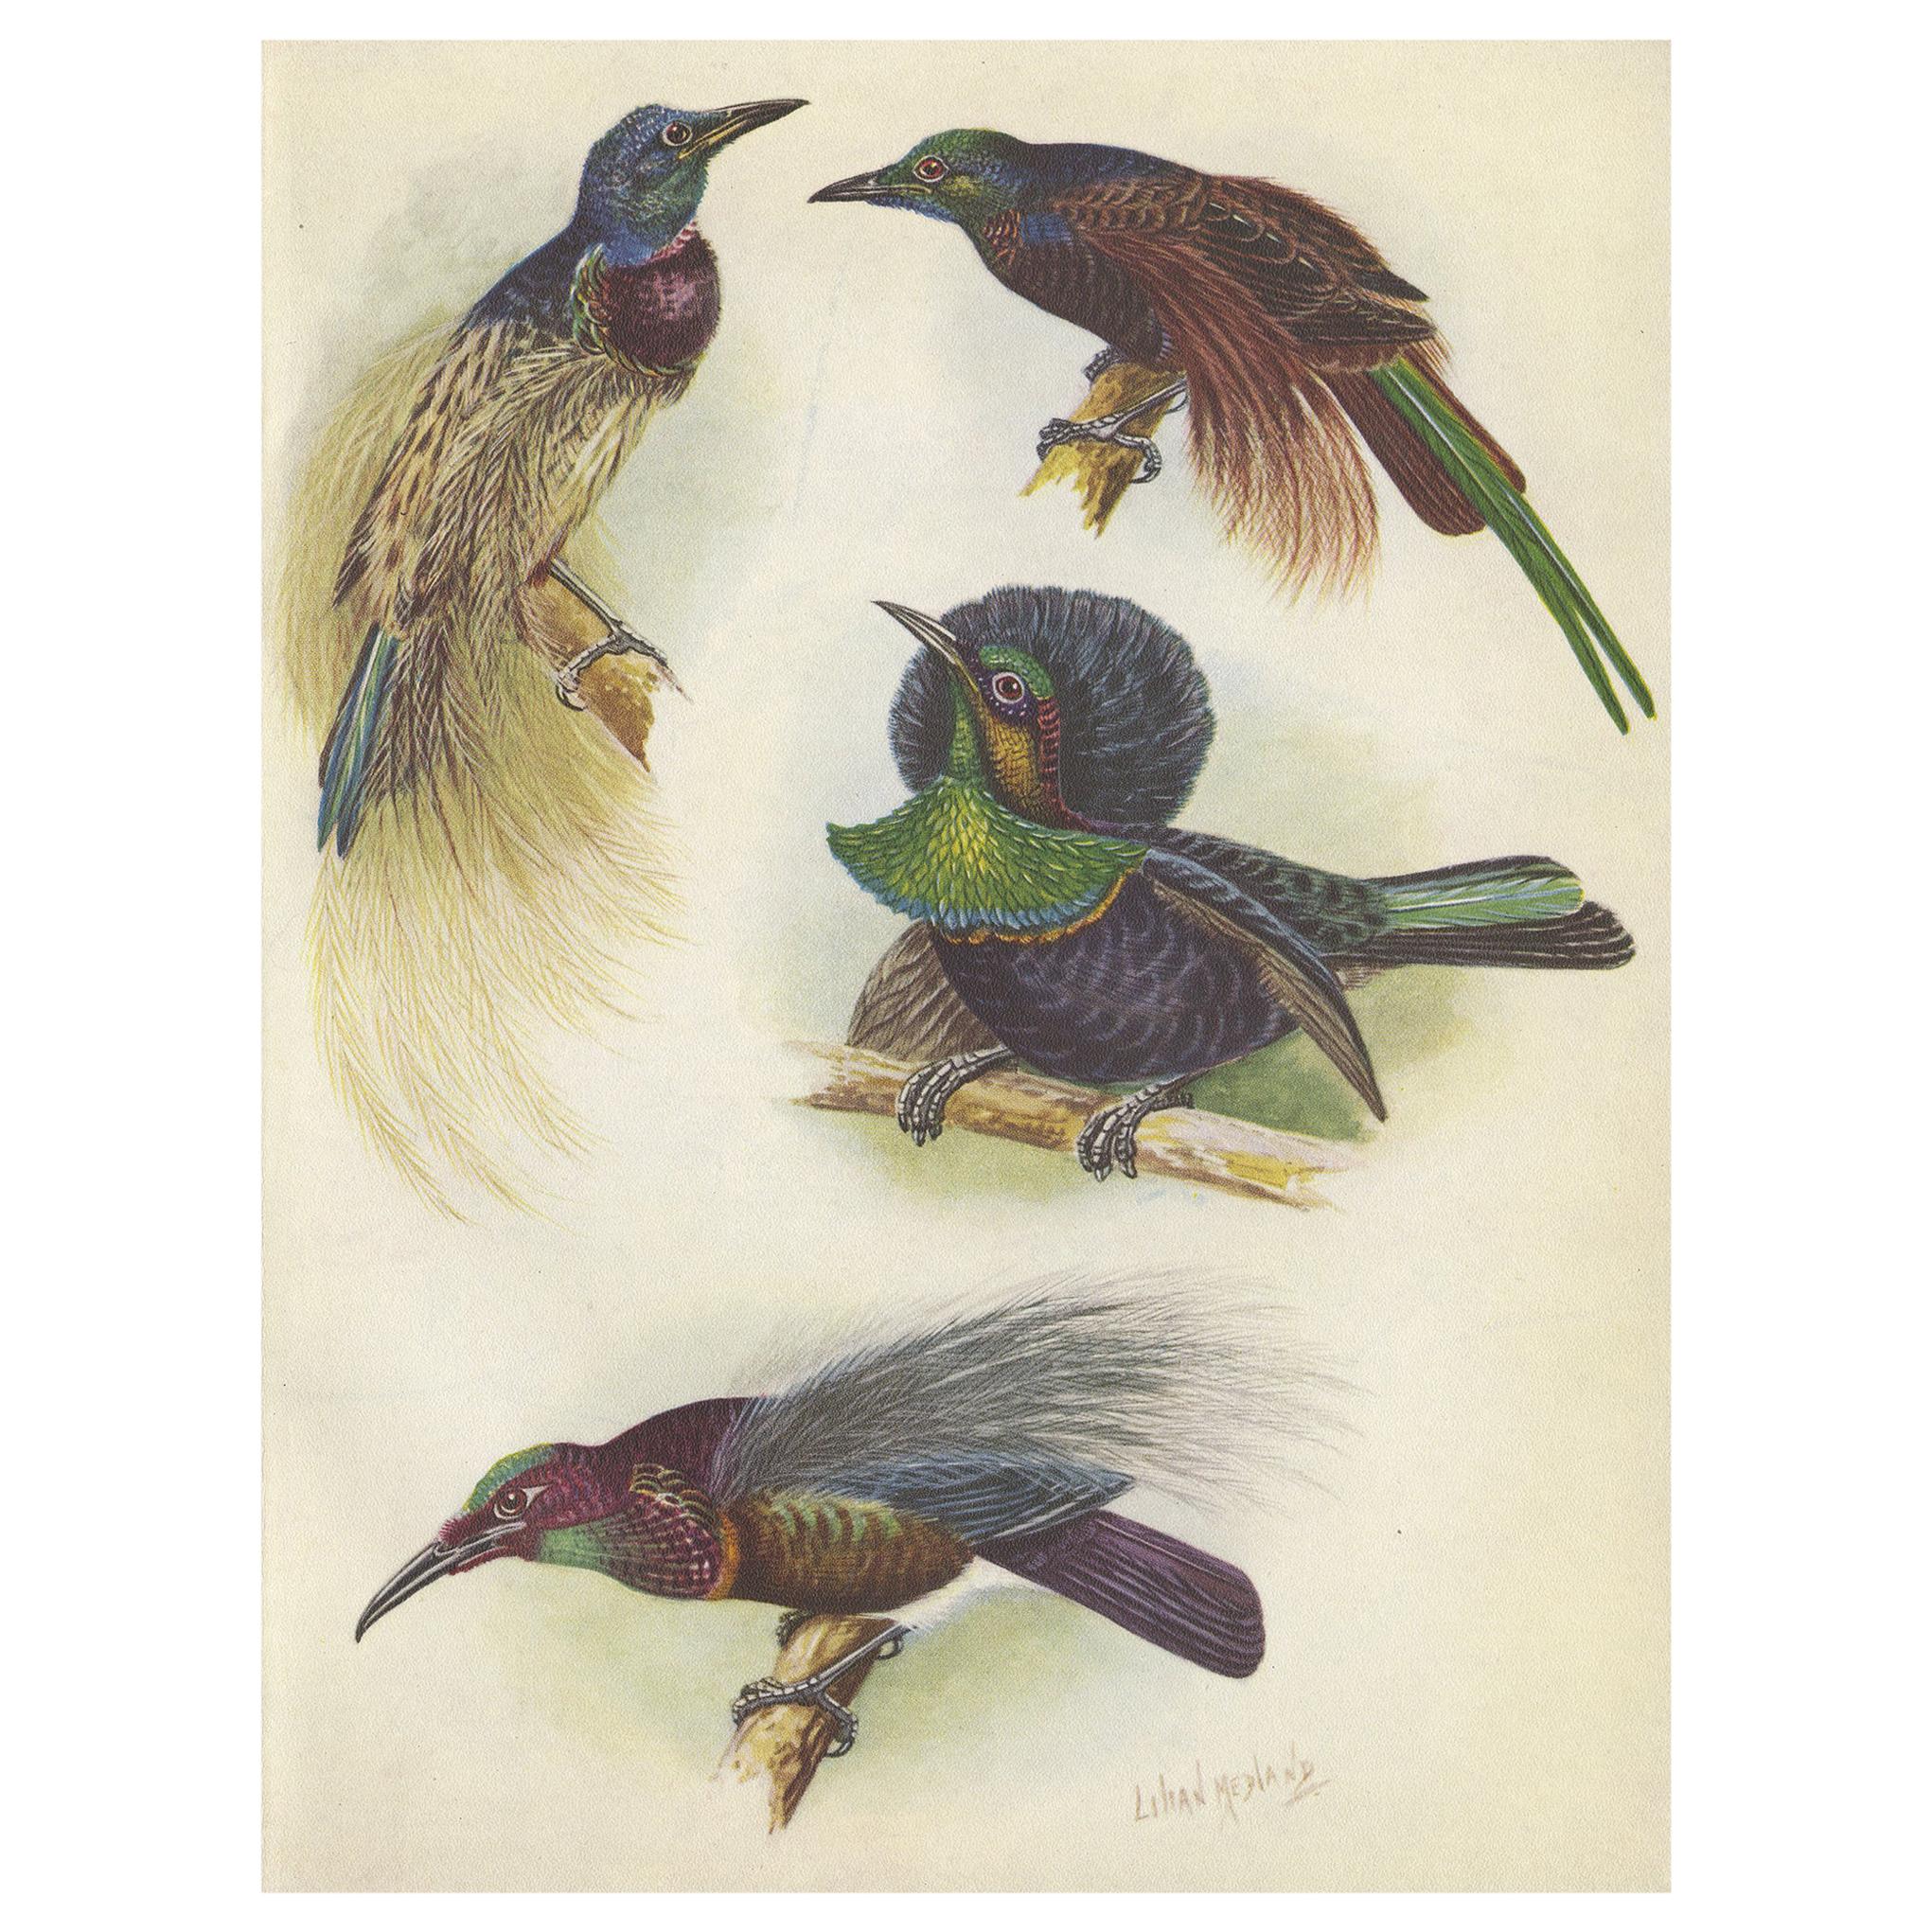 Impression ancienne de l'oiseau Rifle Bird and Others de Bensbach, 1950